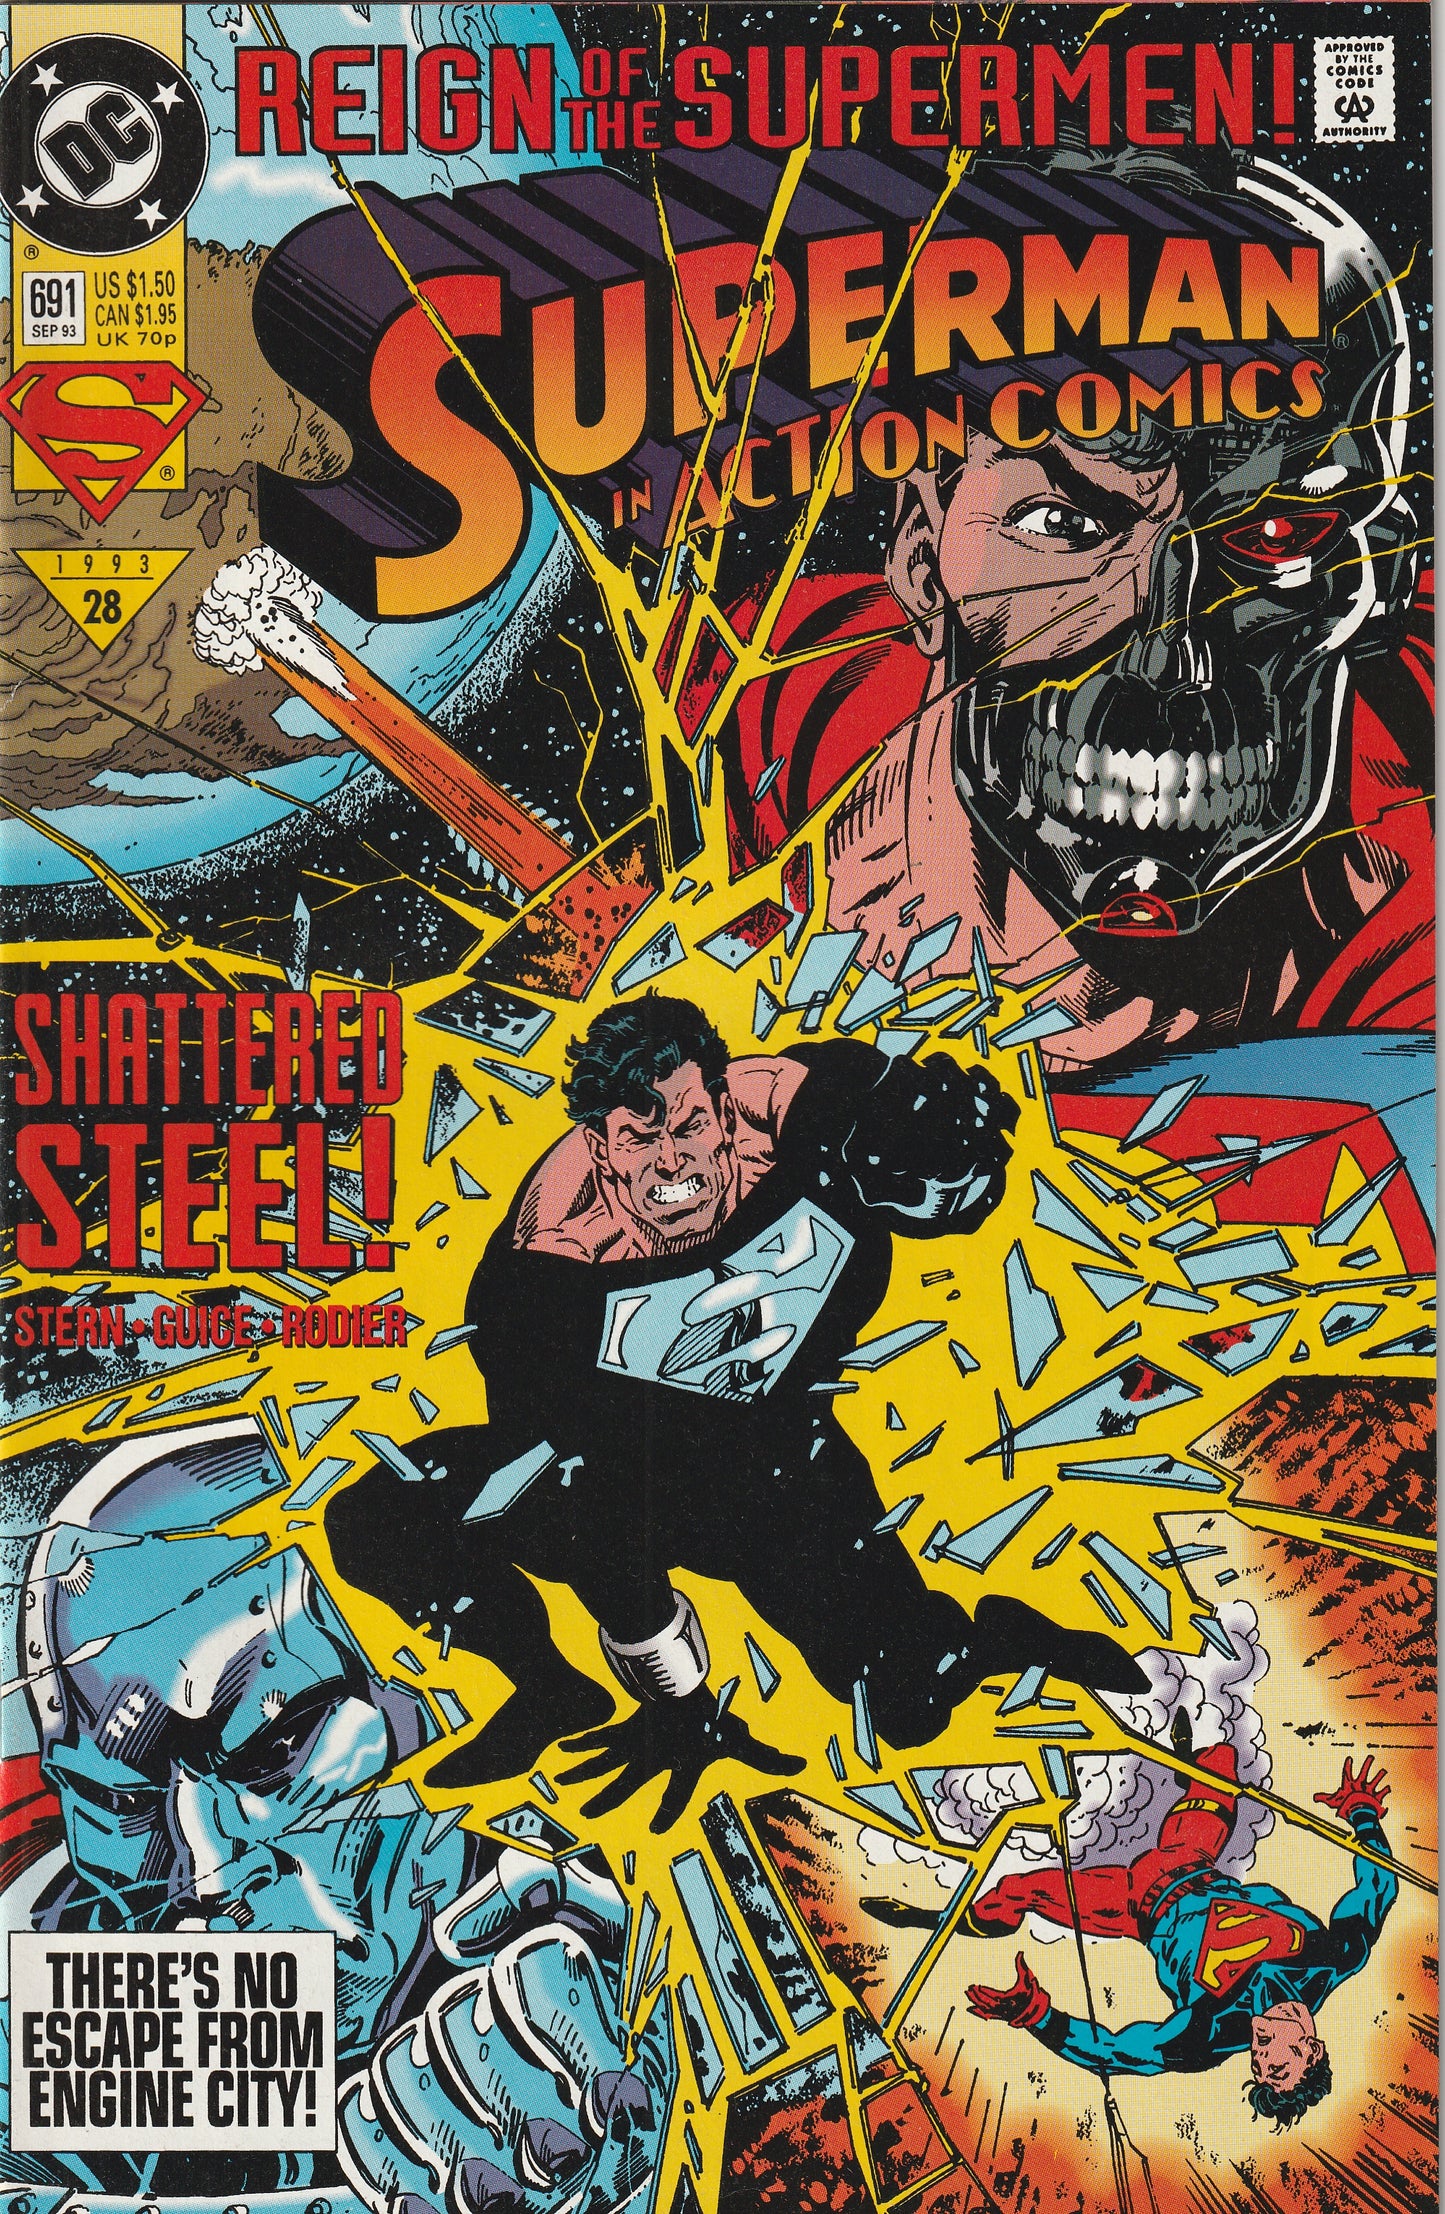 Action Comics #691 (1993) - Reign of the Supermen